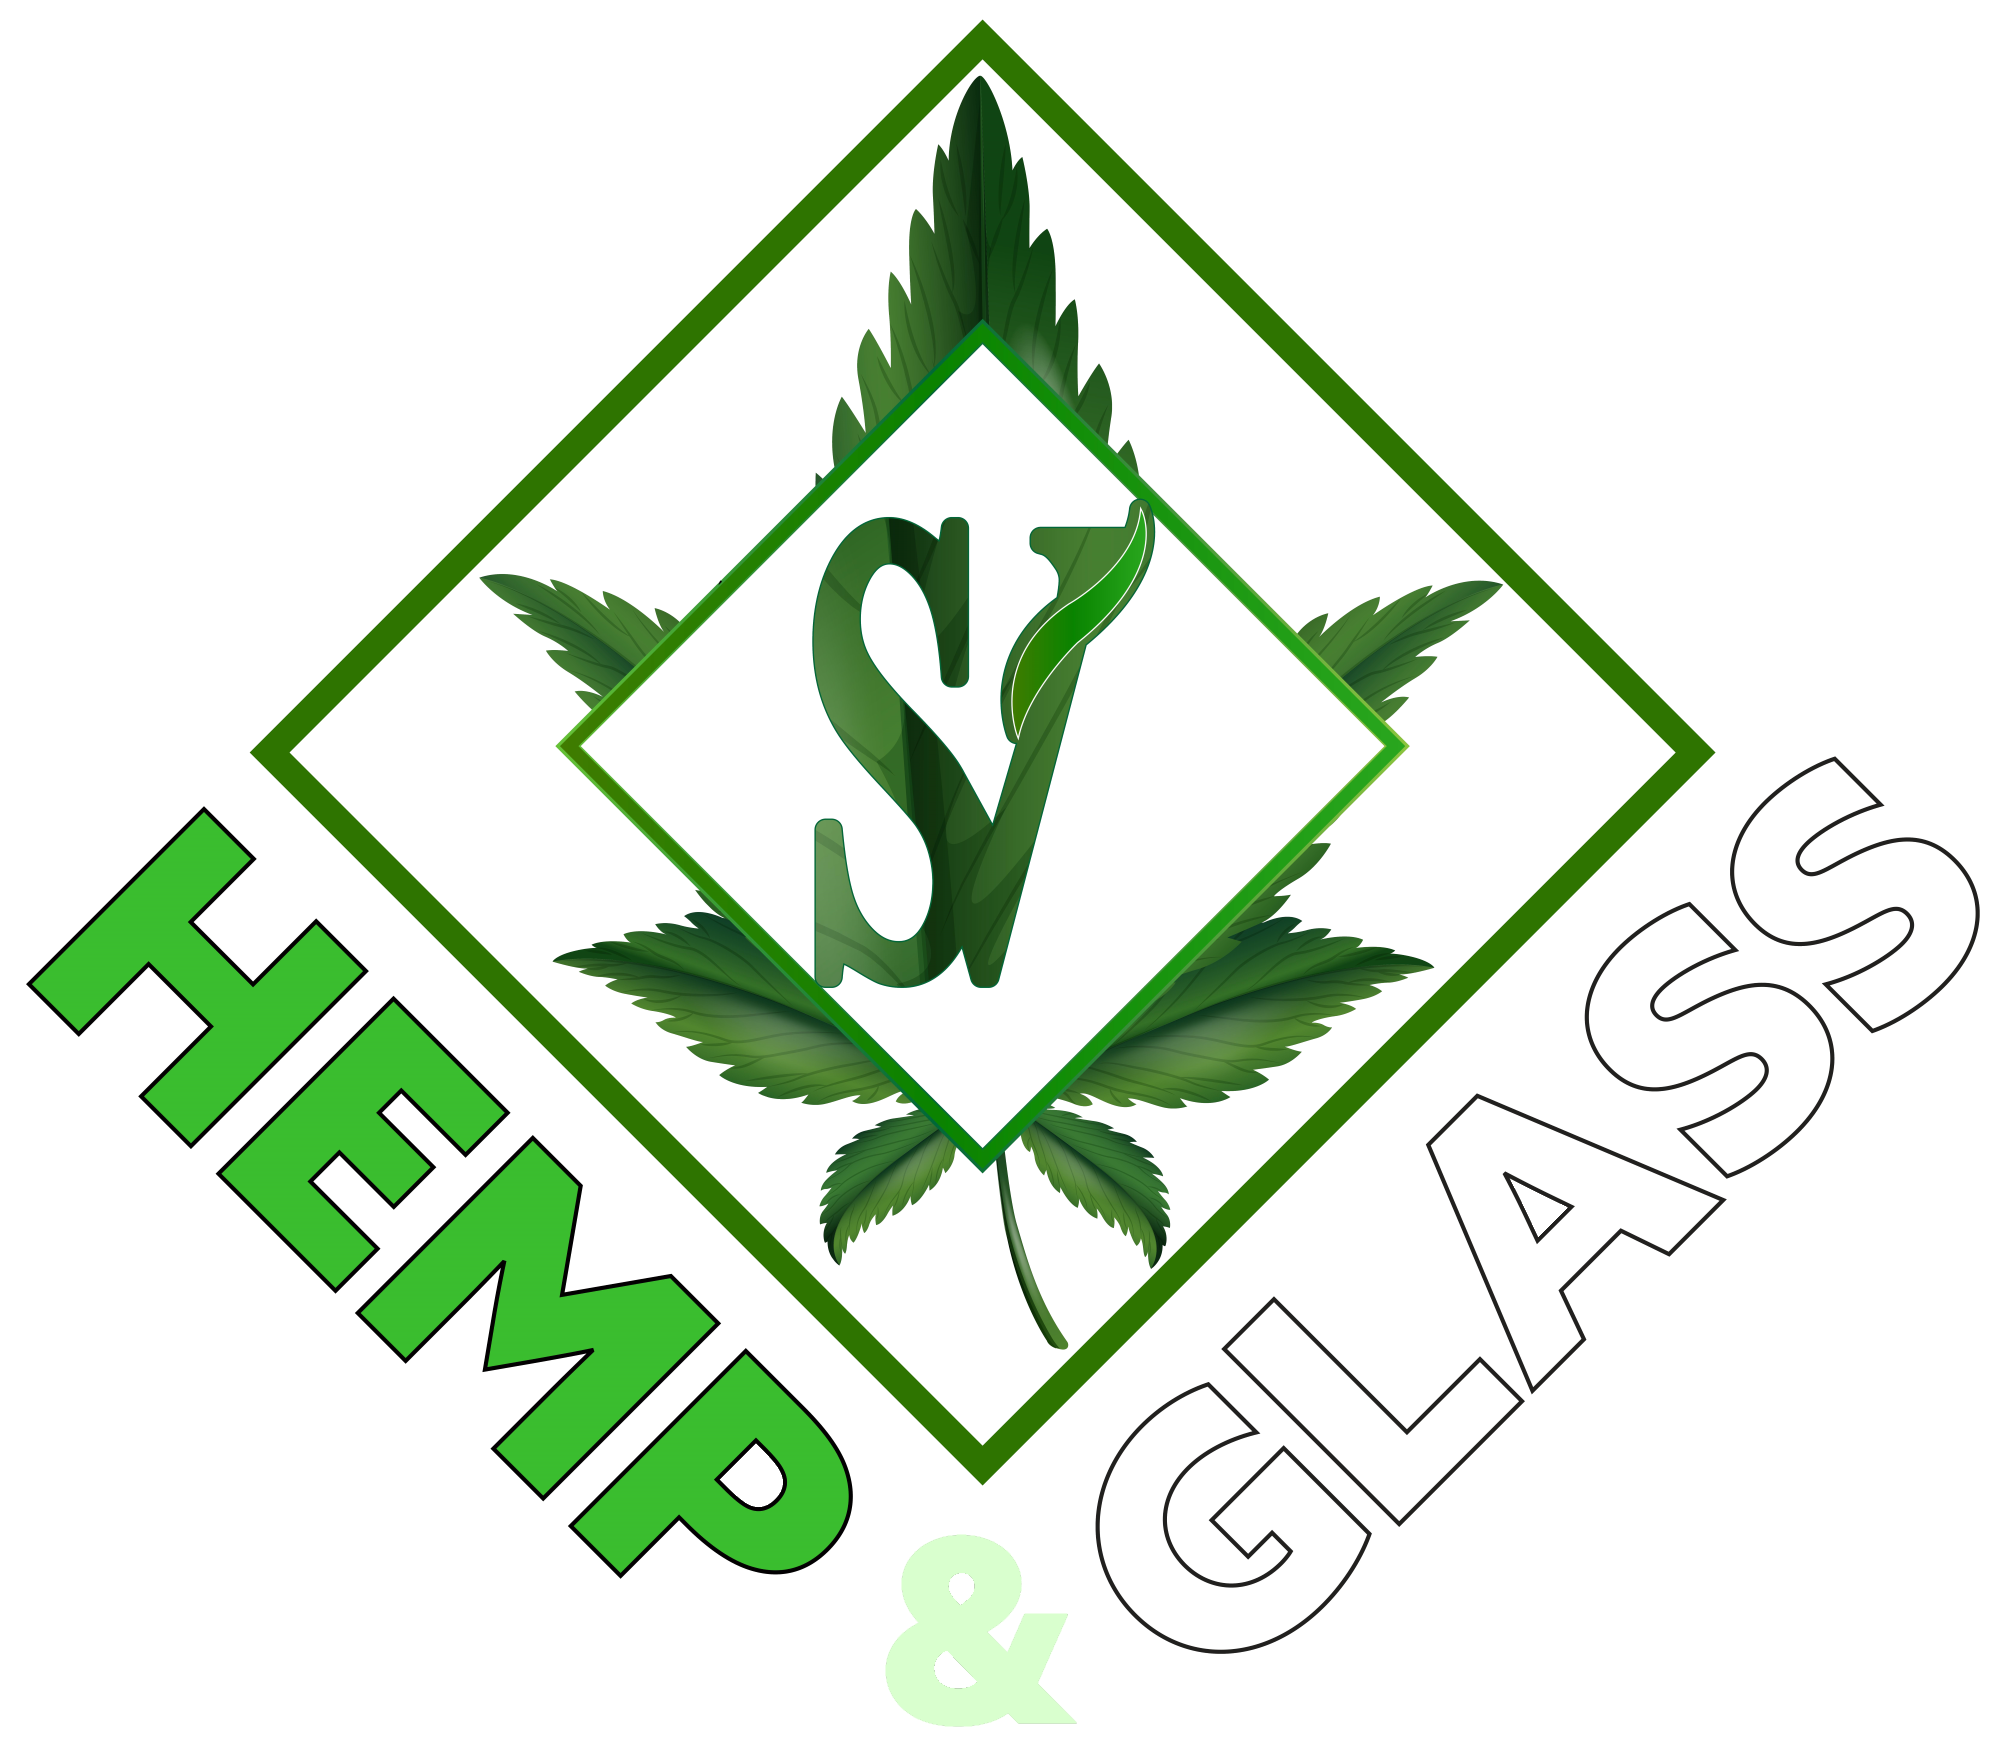 SV Hemp and Glass